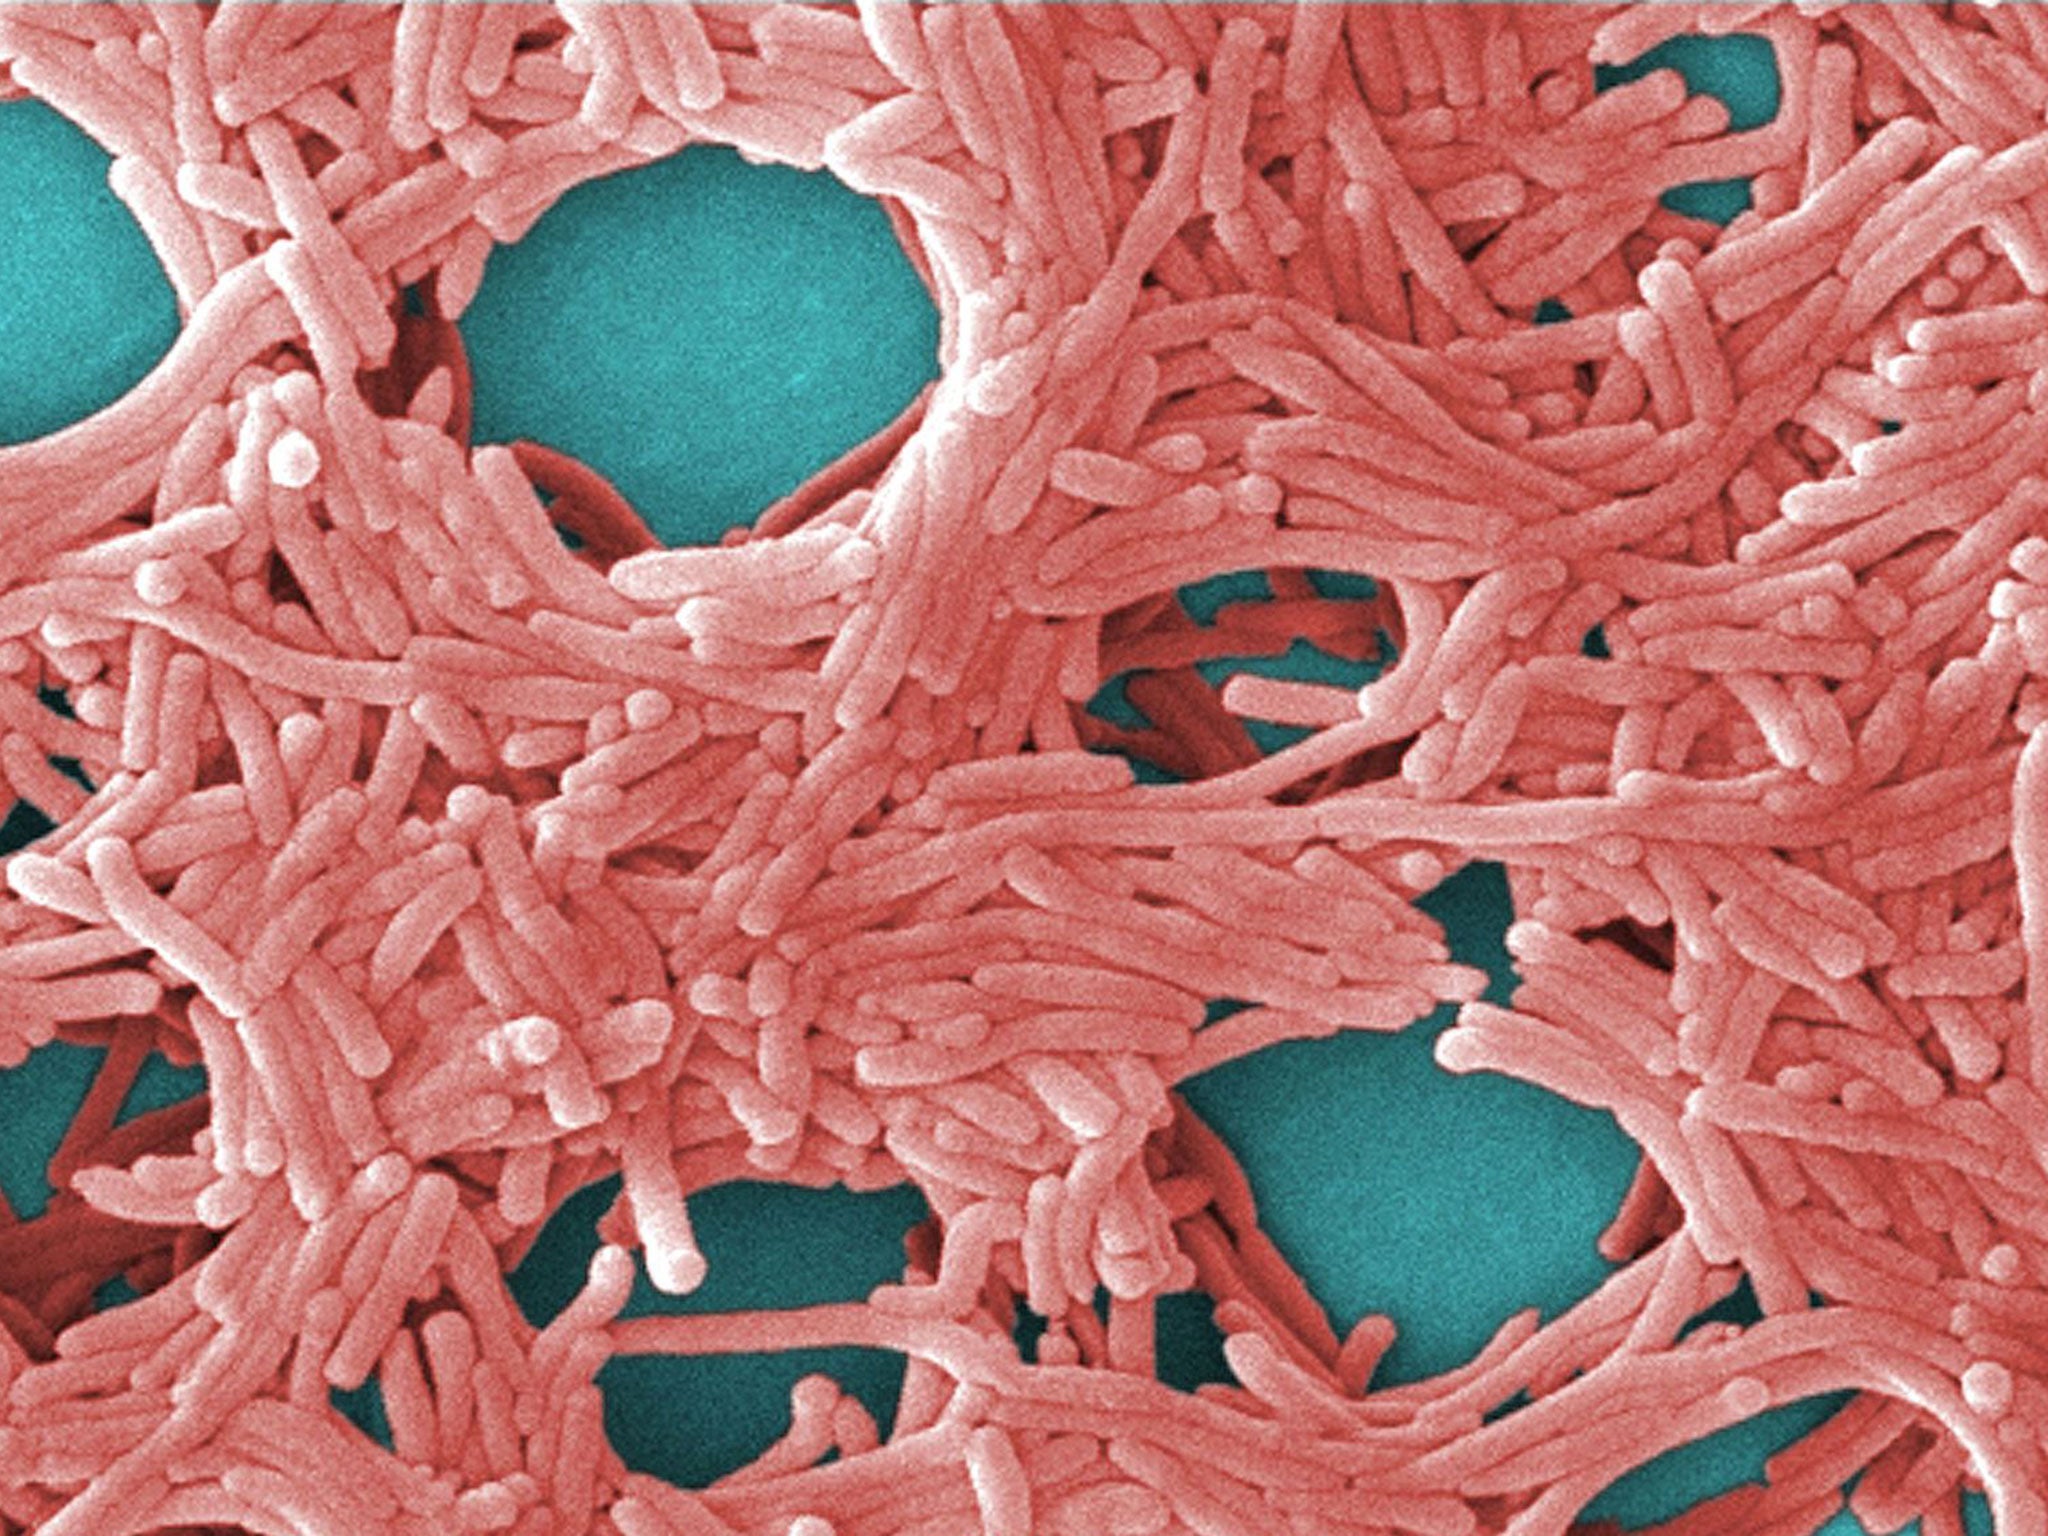 La bacteria Legionella fue la responsable del brote